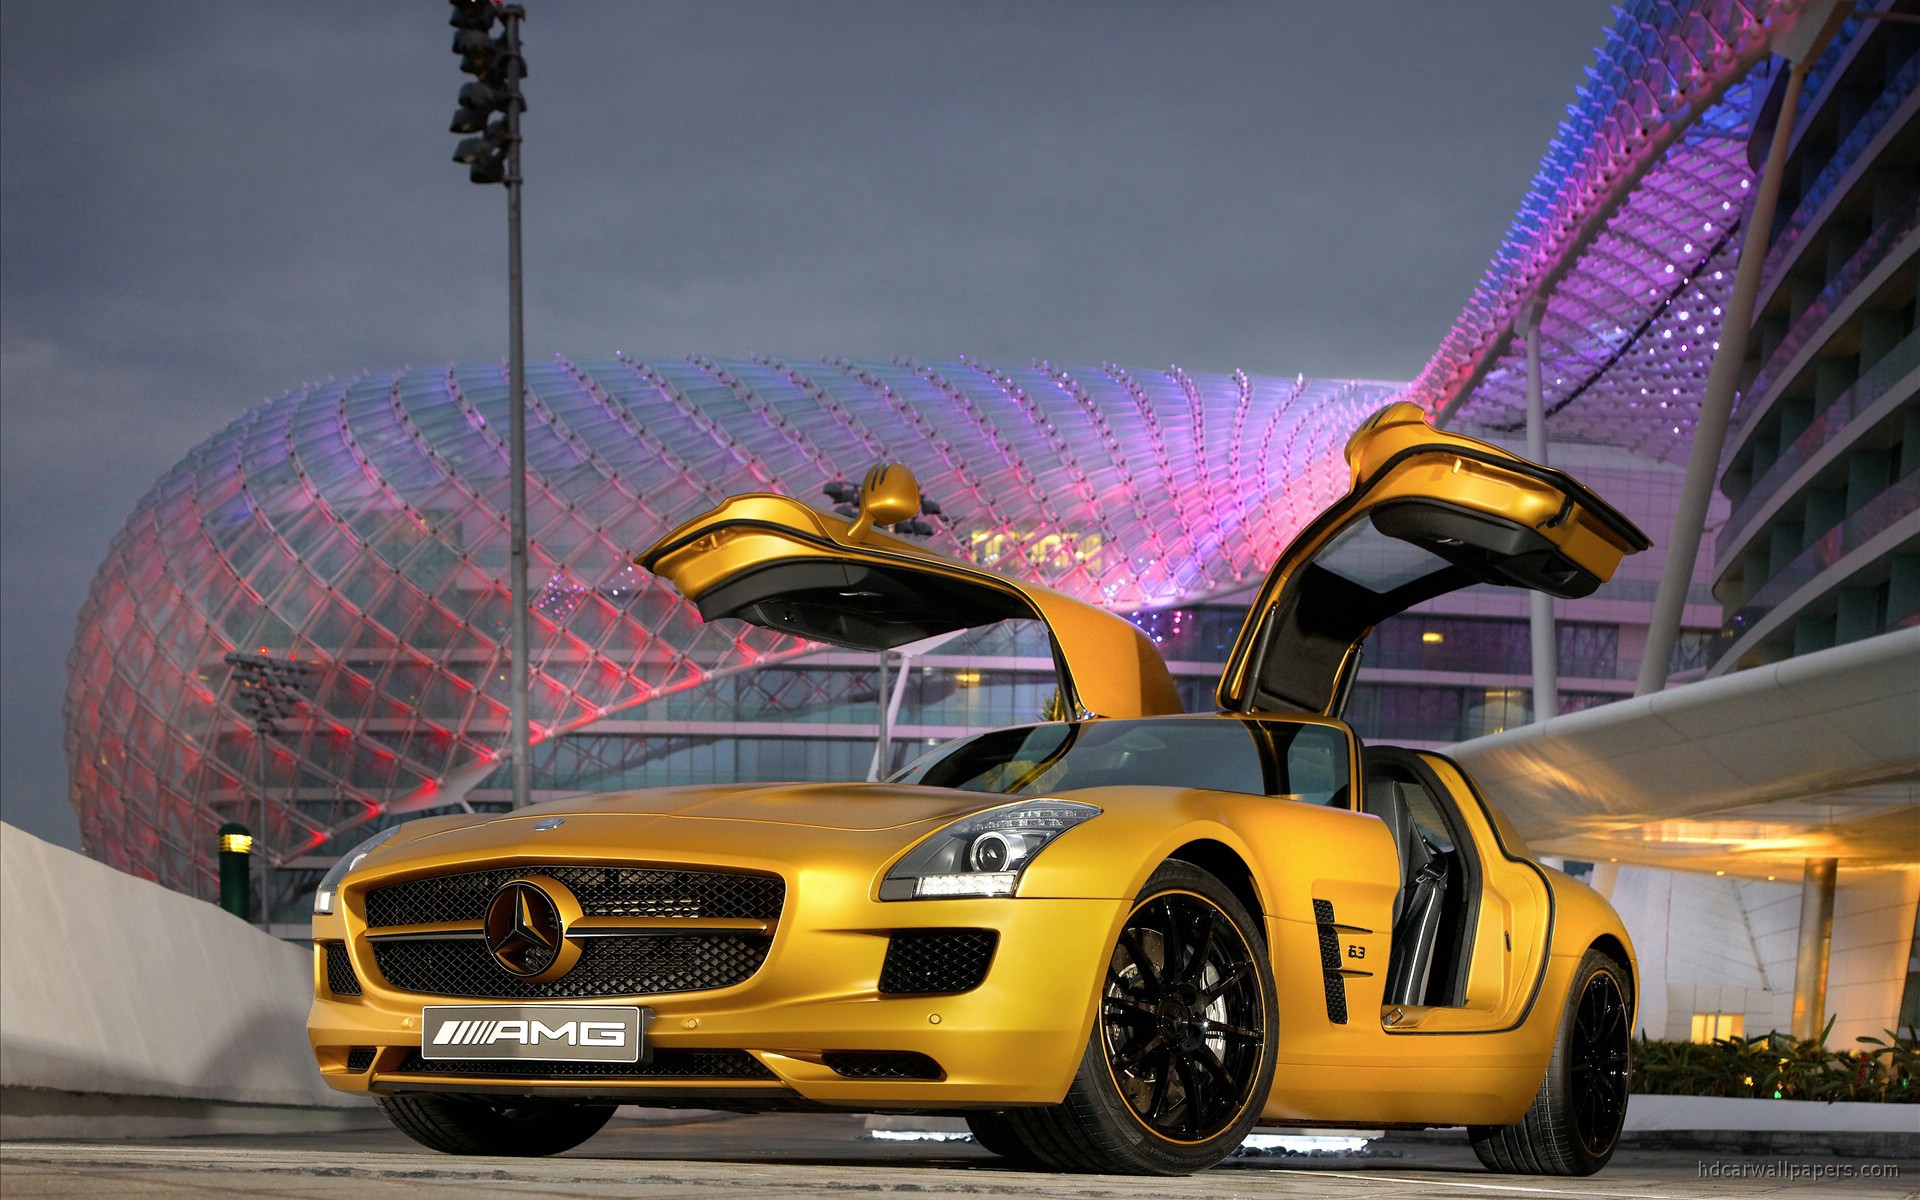 Mercedes Benz Sls Amg Gold - HD Wallpaper 